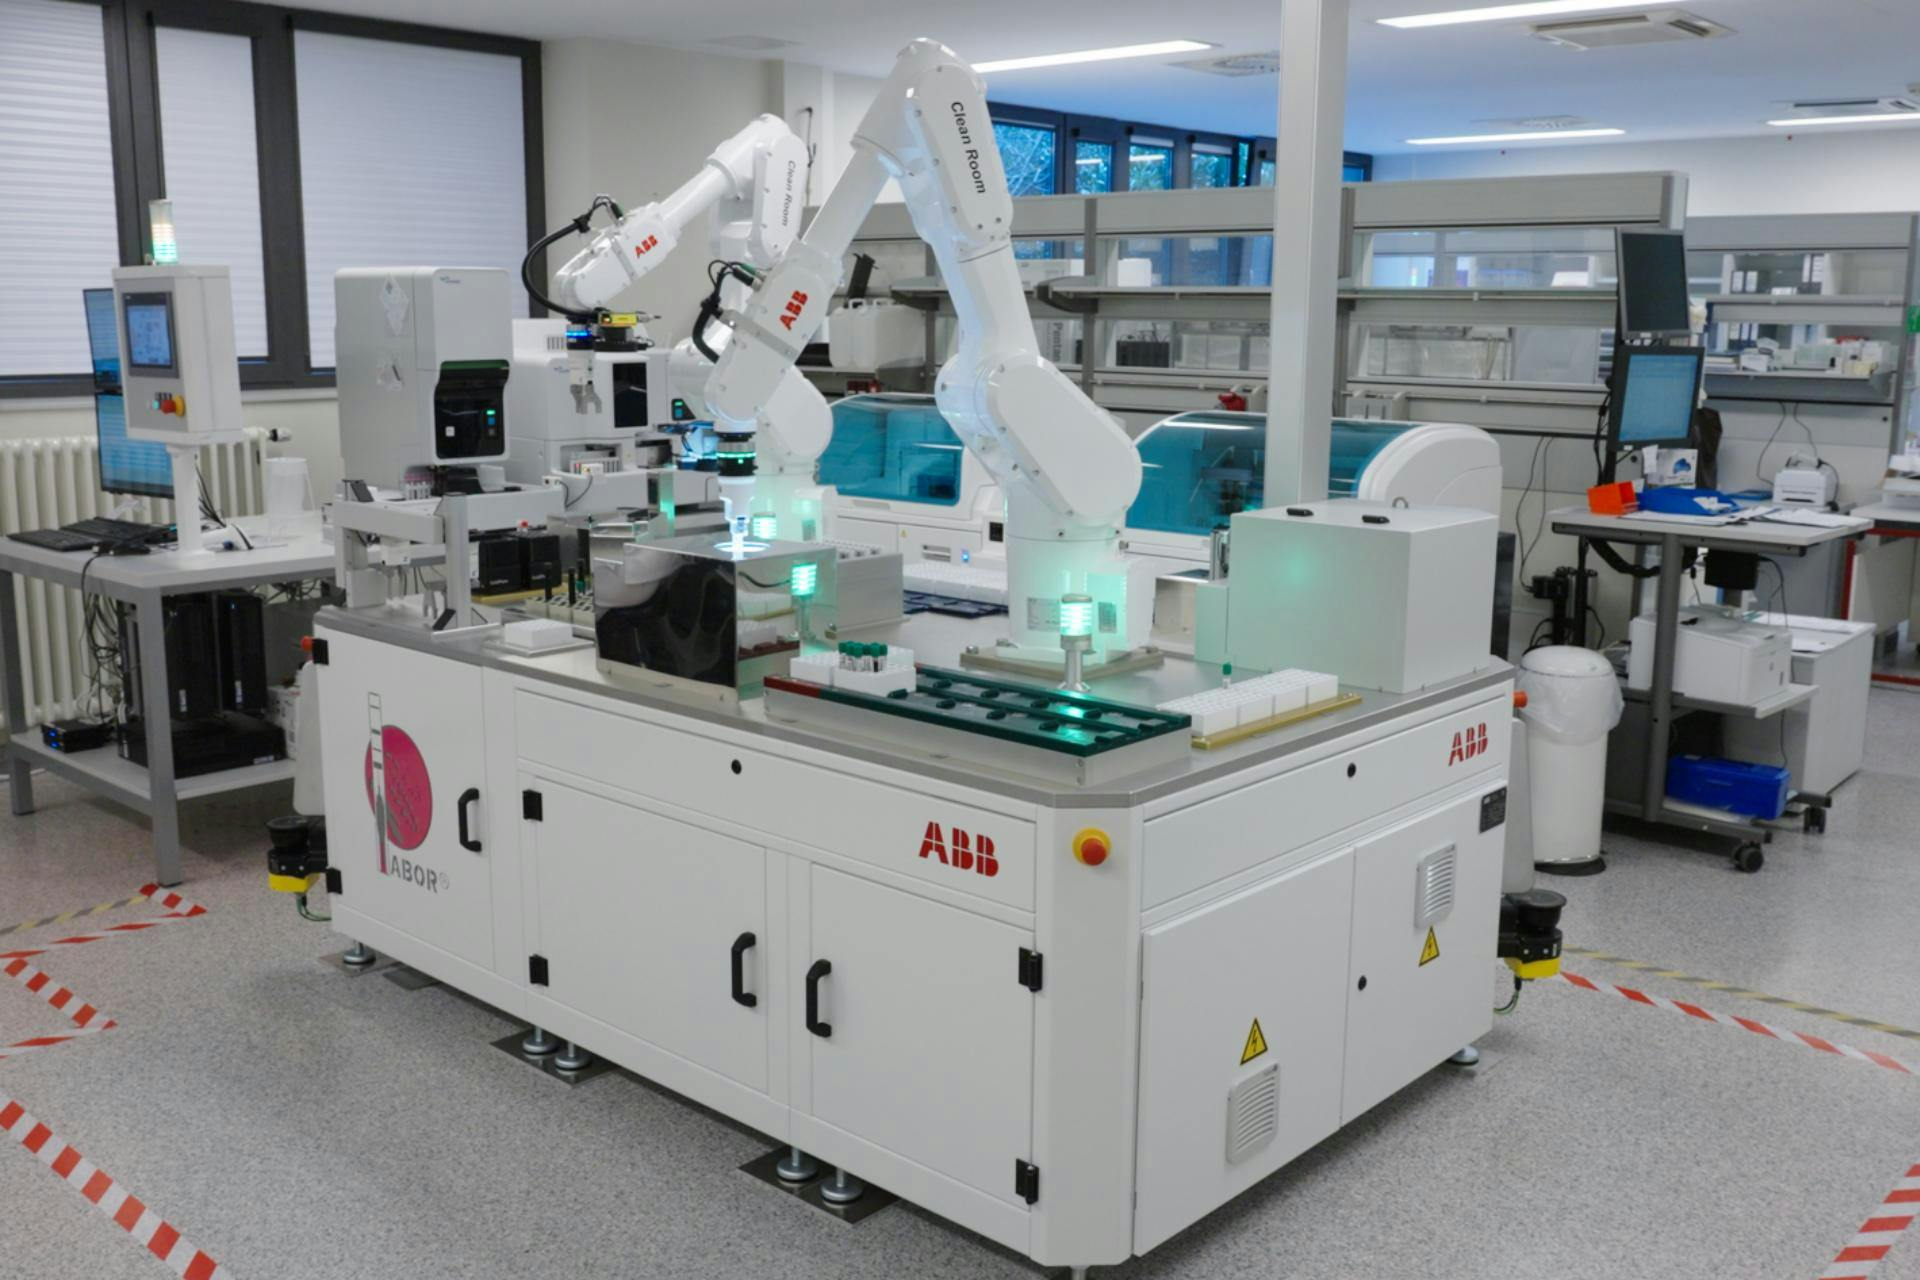 Ein IRB 1300 Industrieroboter von ABB als Teil einer patentierten Automatisierungs-Lösung für kleinere und mittlere Labore in Krankenhäusern zur Blutuntersuchung.